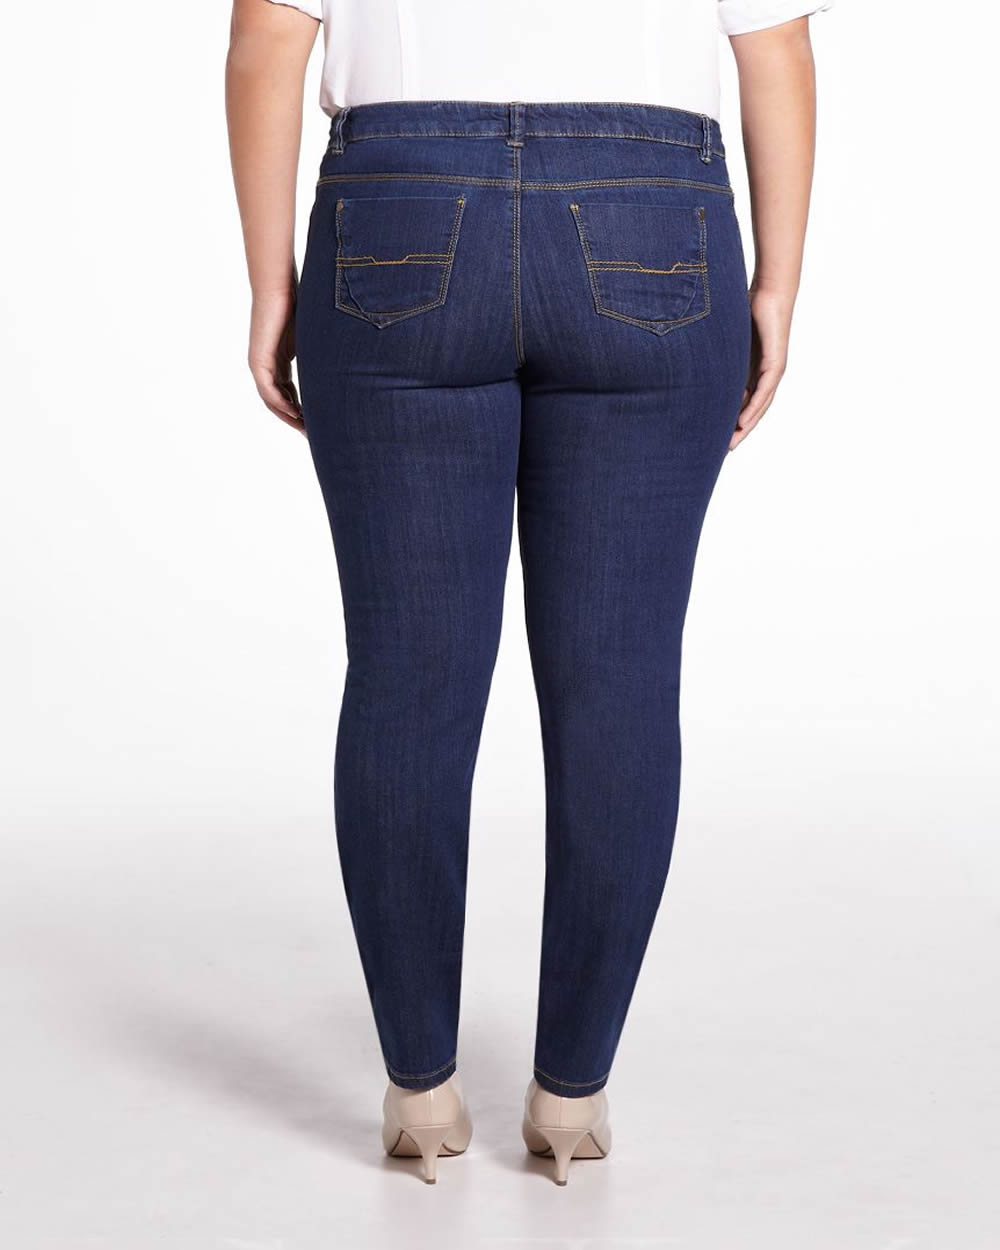 Plus Size Authentic Slim Leg Jeans | Plus Sizes | Shop Online at Reitmans